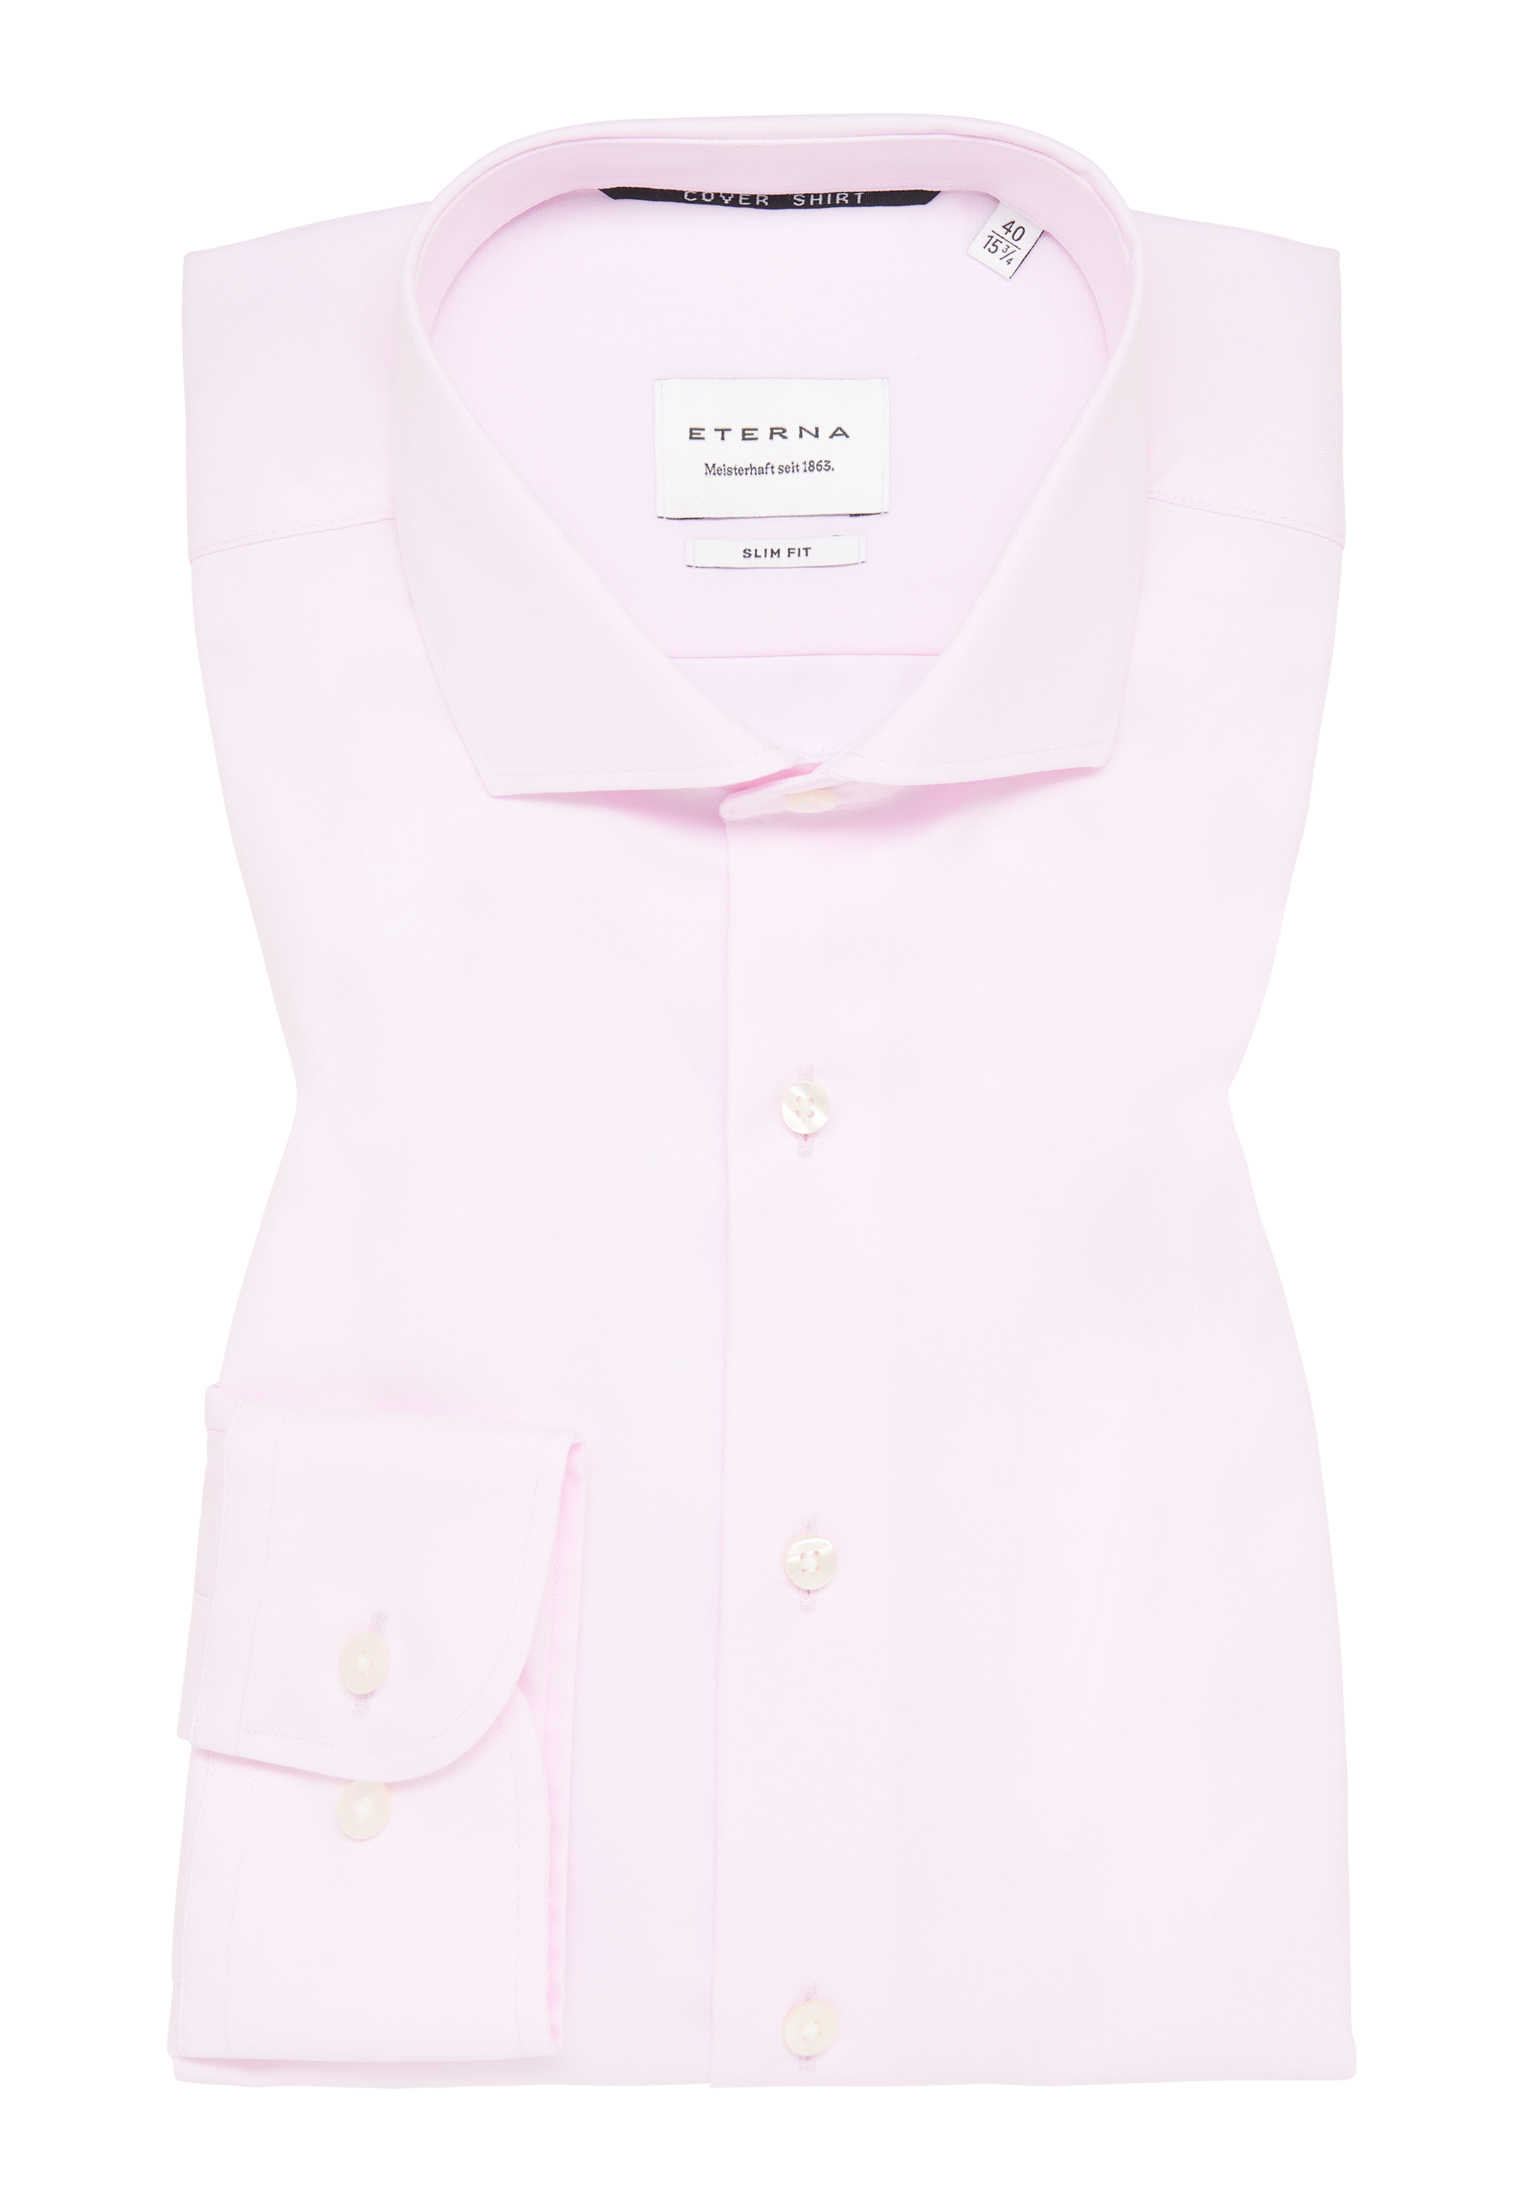 Langarm in 1SH05518-15-11-42-1/1 | rosa | | SLIM rosa Cover unifarben Shirt FIT 42 |